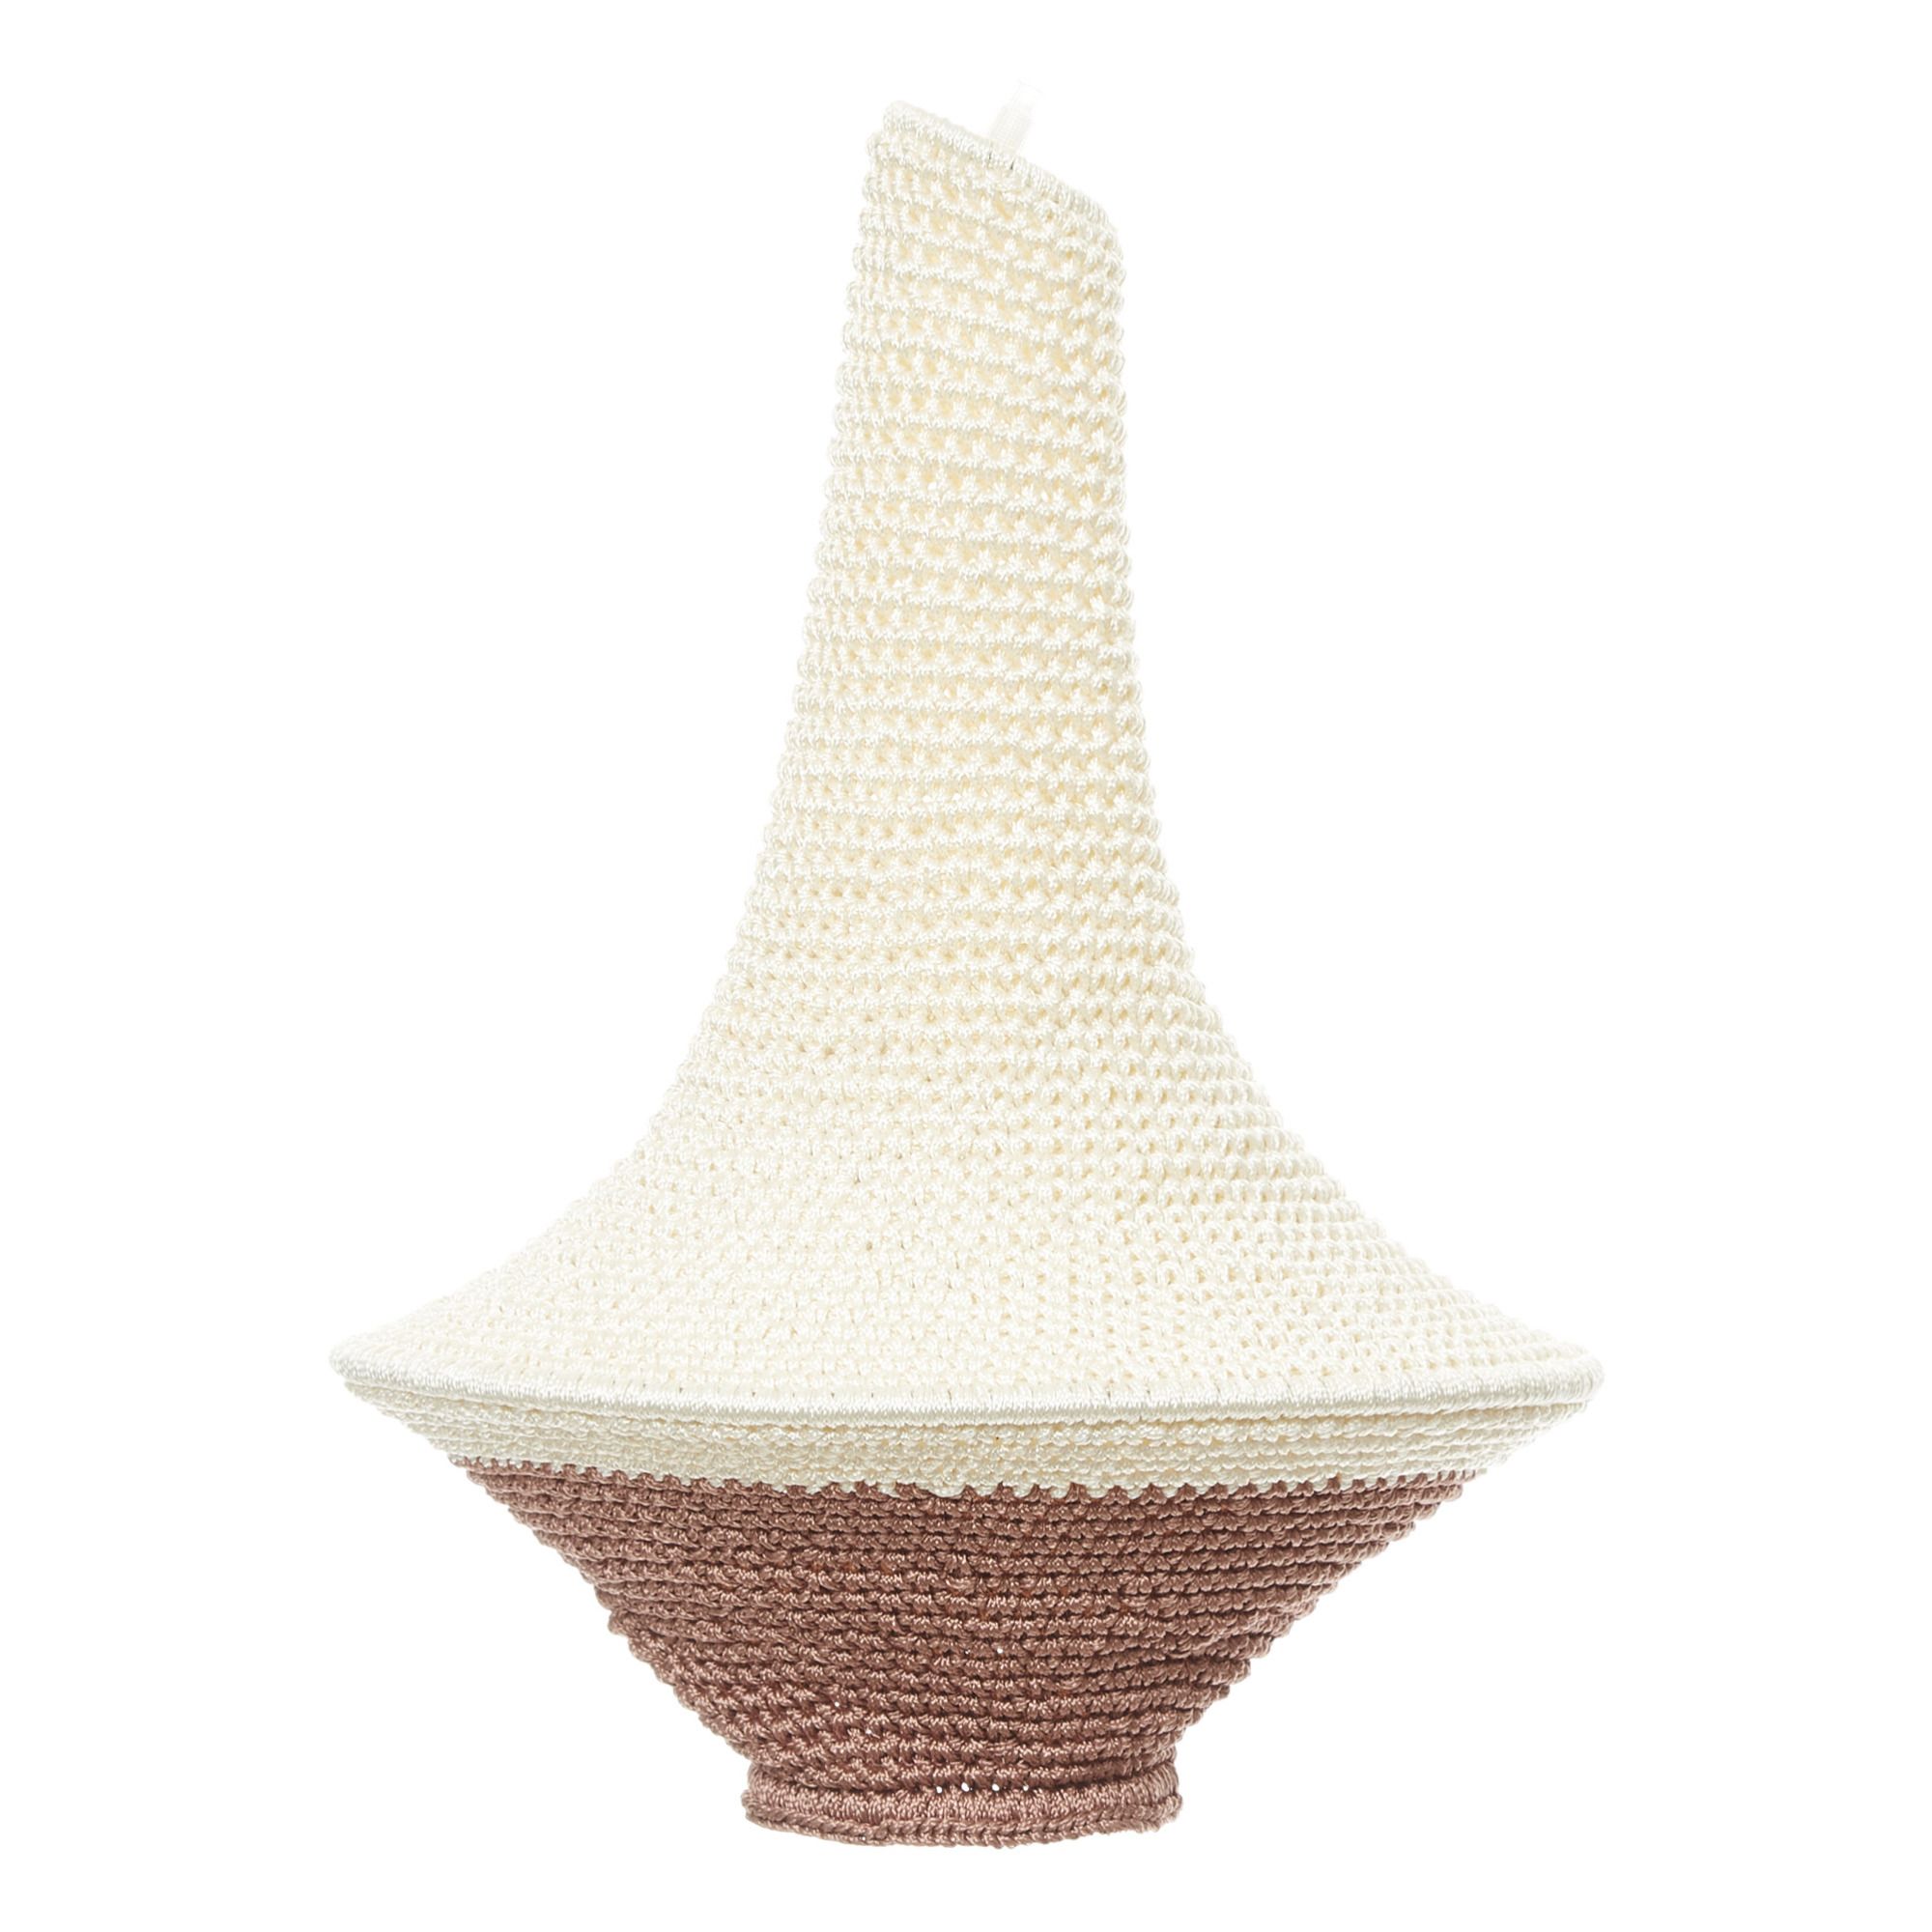 Crochet Light Crochet Suspension Light Boho Light Pendant Handmade